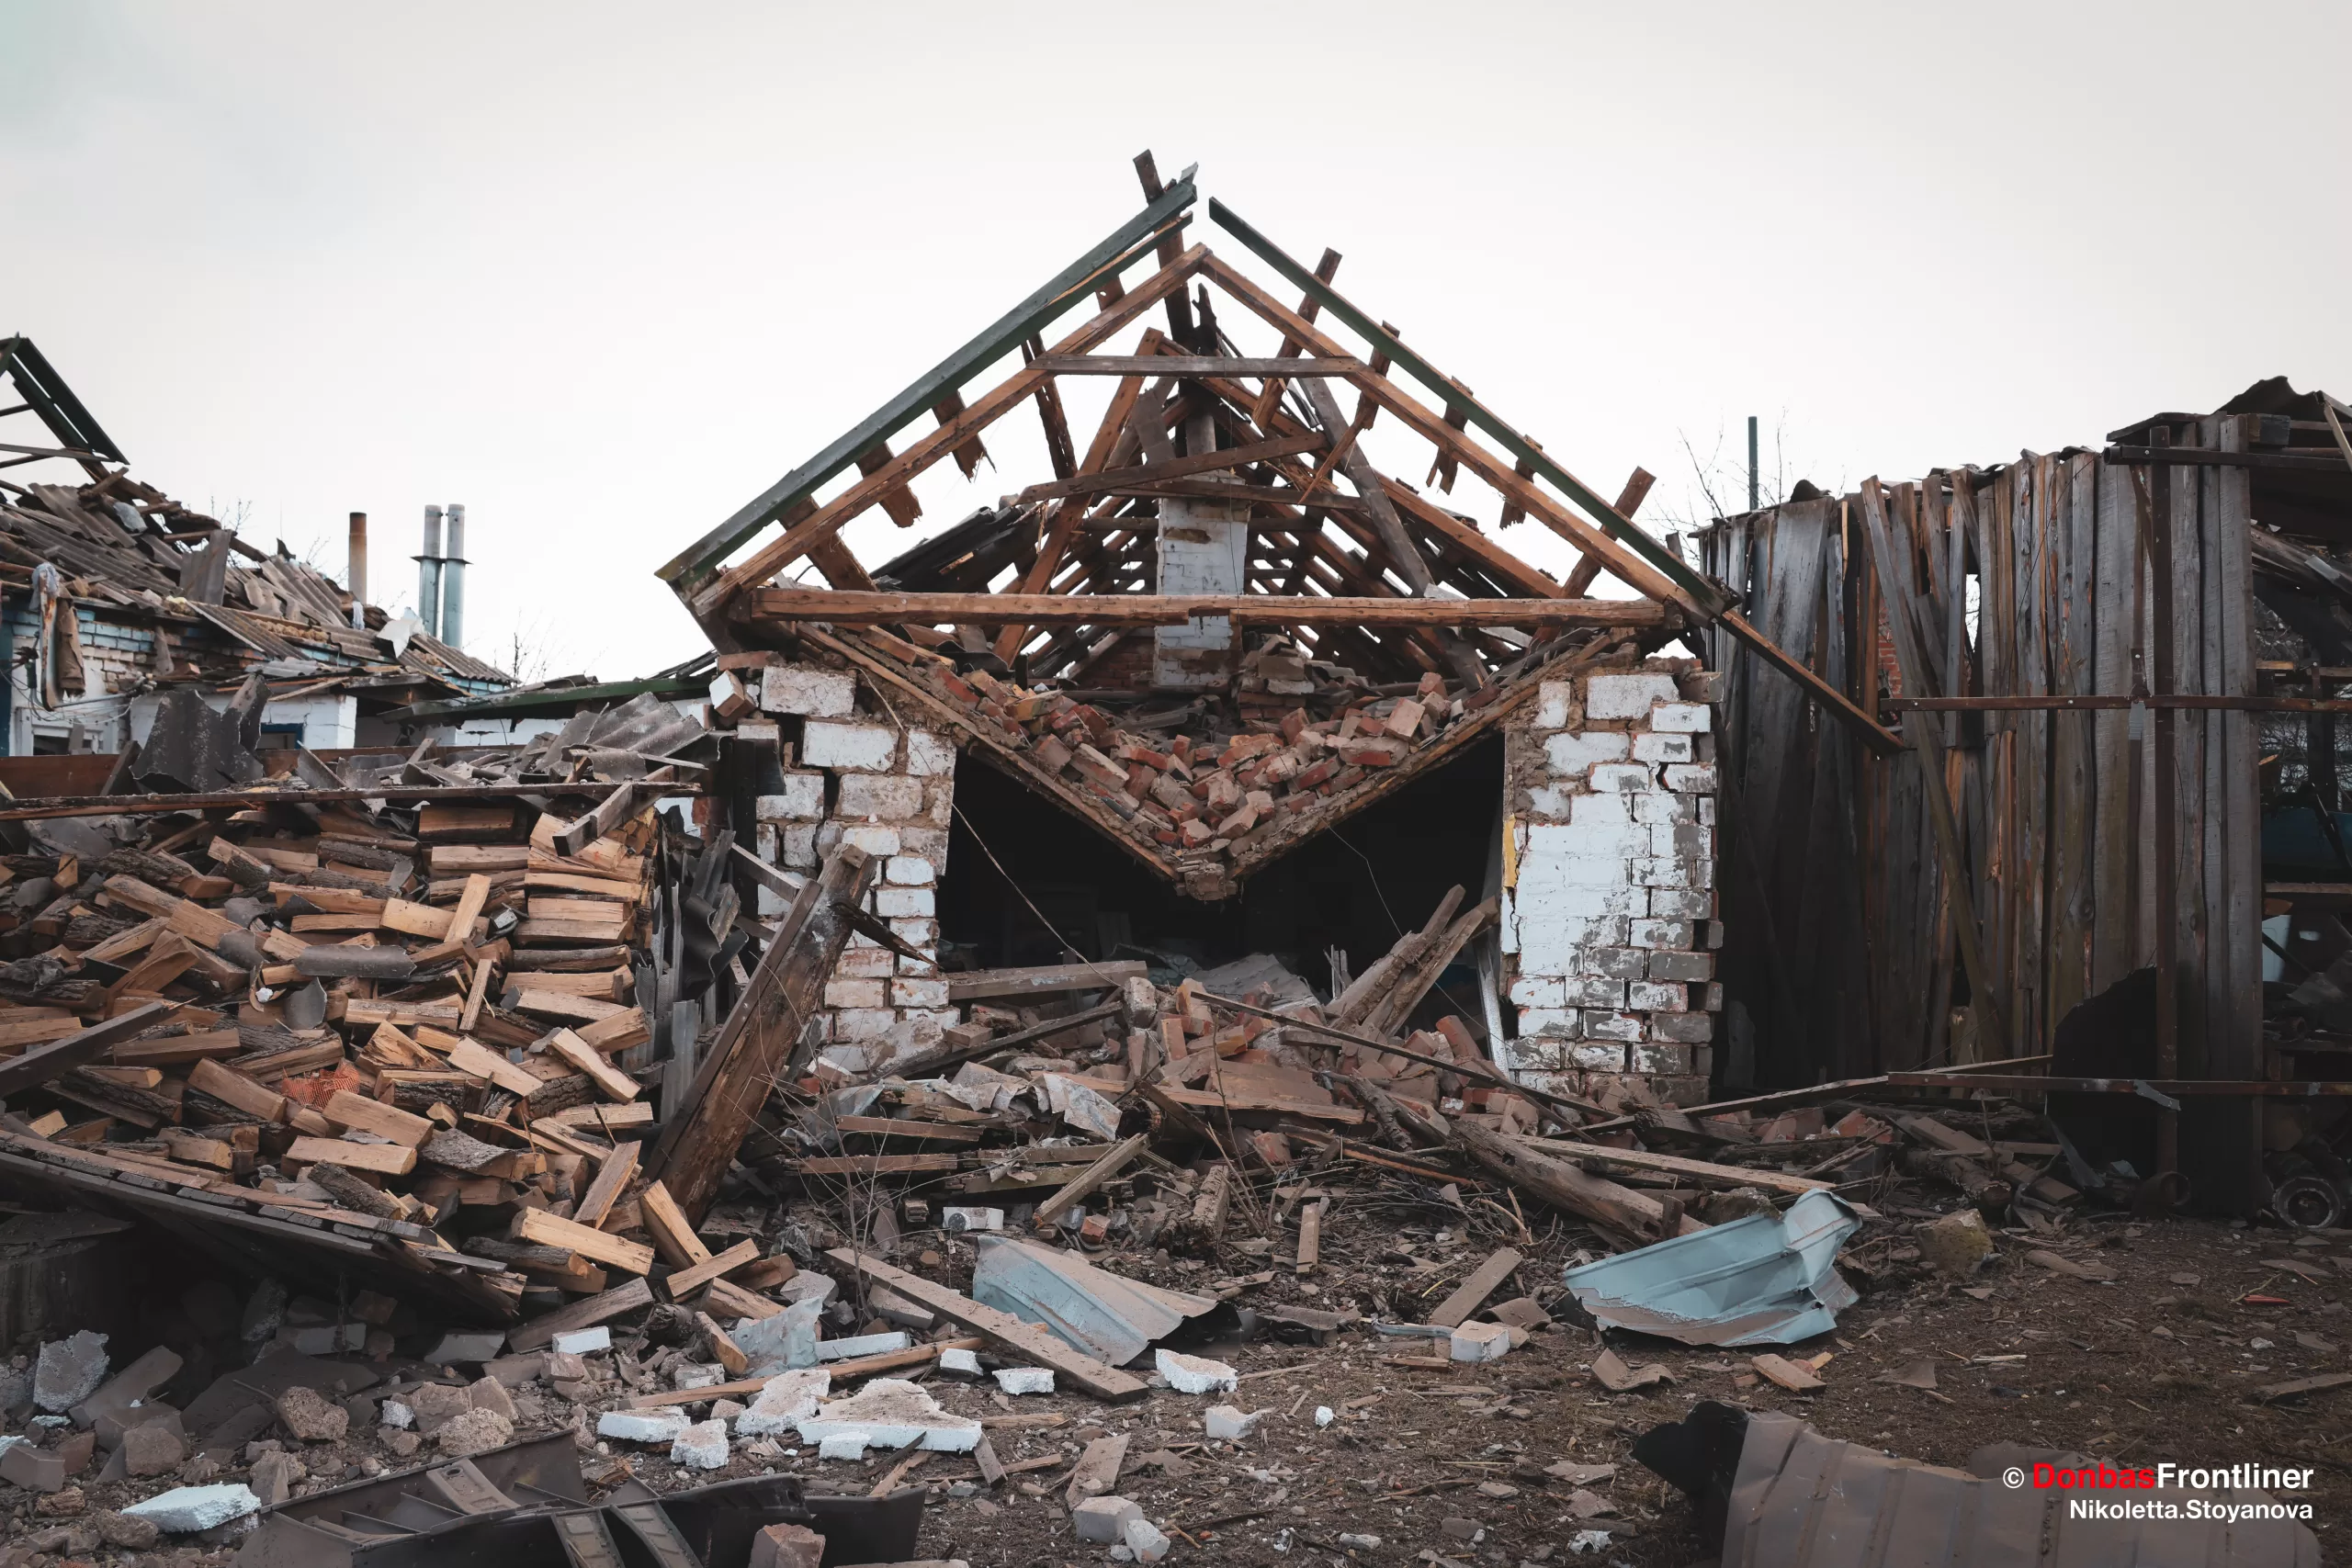   Наслідки руйнувань через обстріли росіян КАБами 16 березня. Зруйновано приватні будинки.